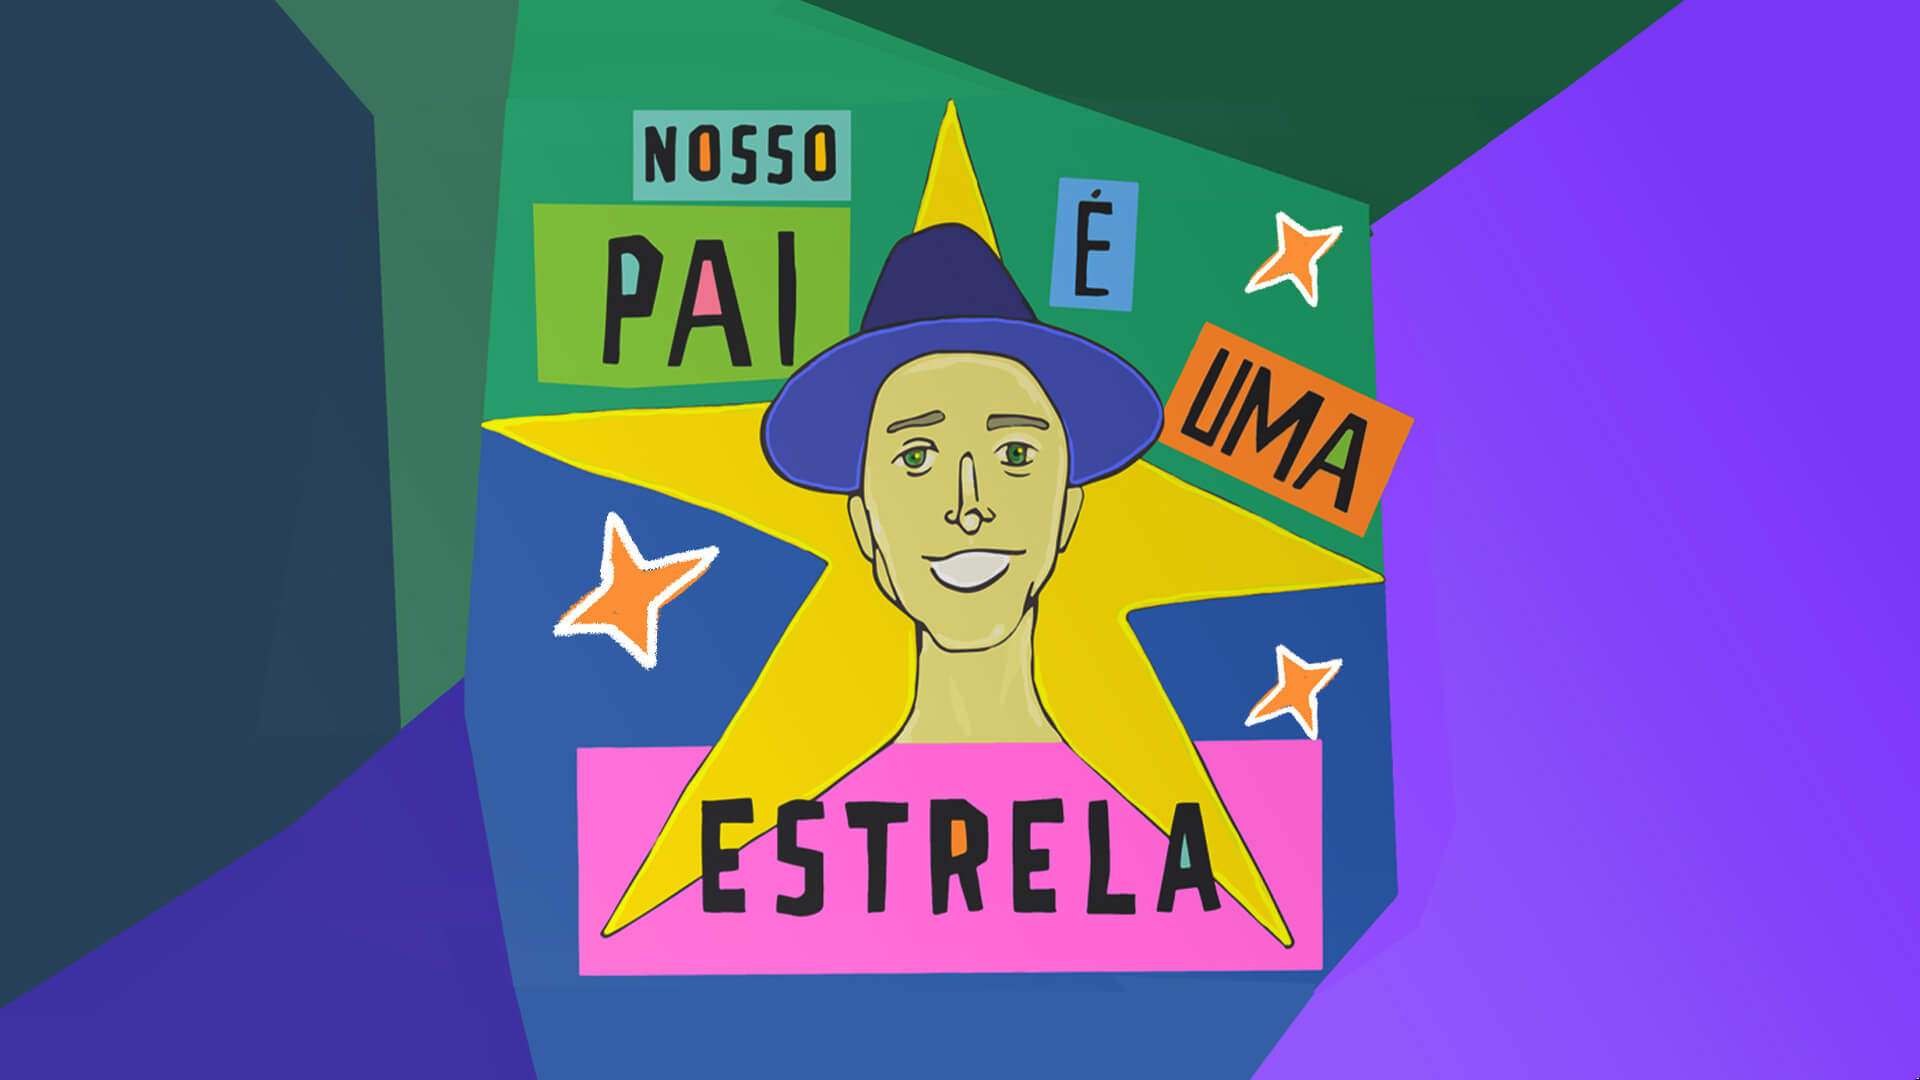 Capa do livro “Nosso pai é uma estrela”, Omar Rosário. Há uma ilustração de Paulo Gustavo usando chapéu sobre uma estrela amarela.